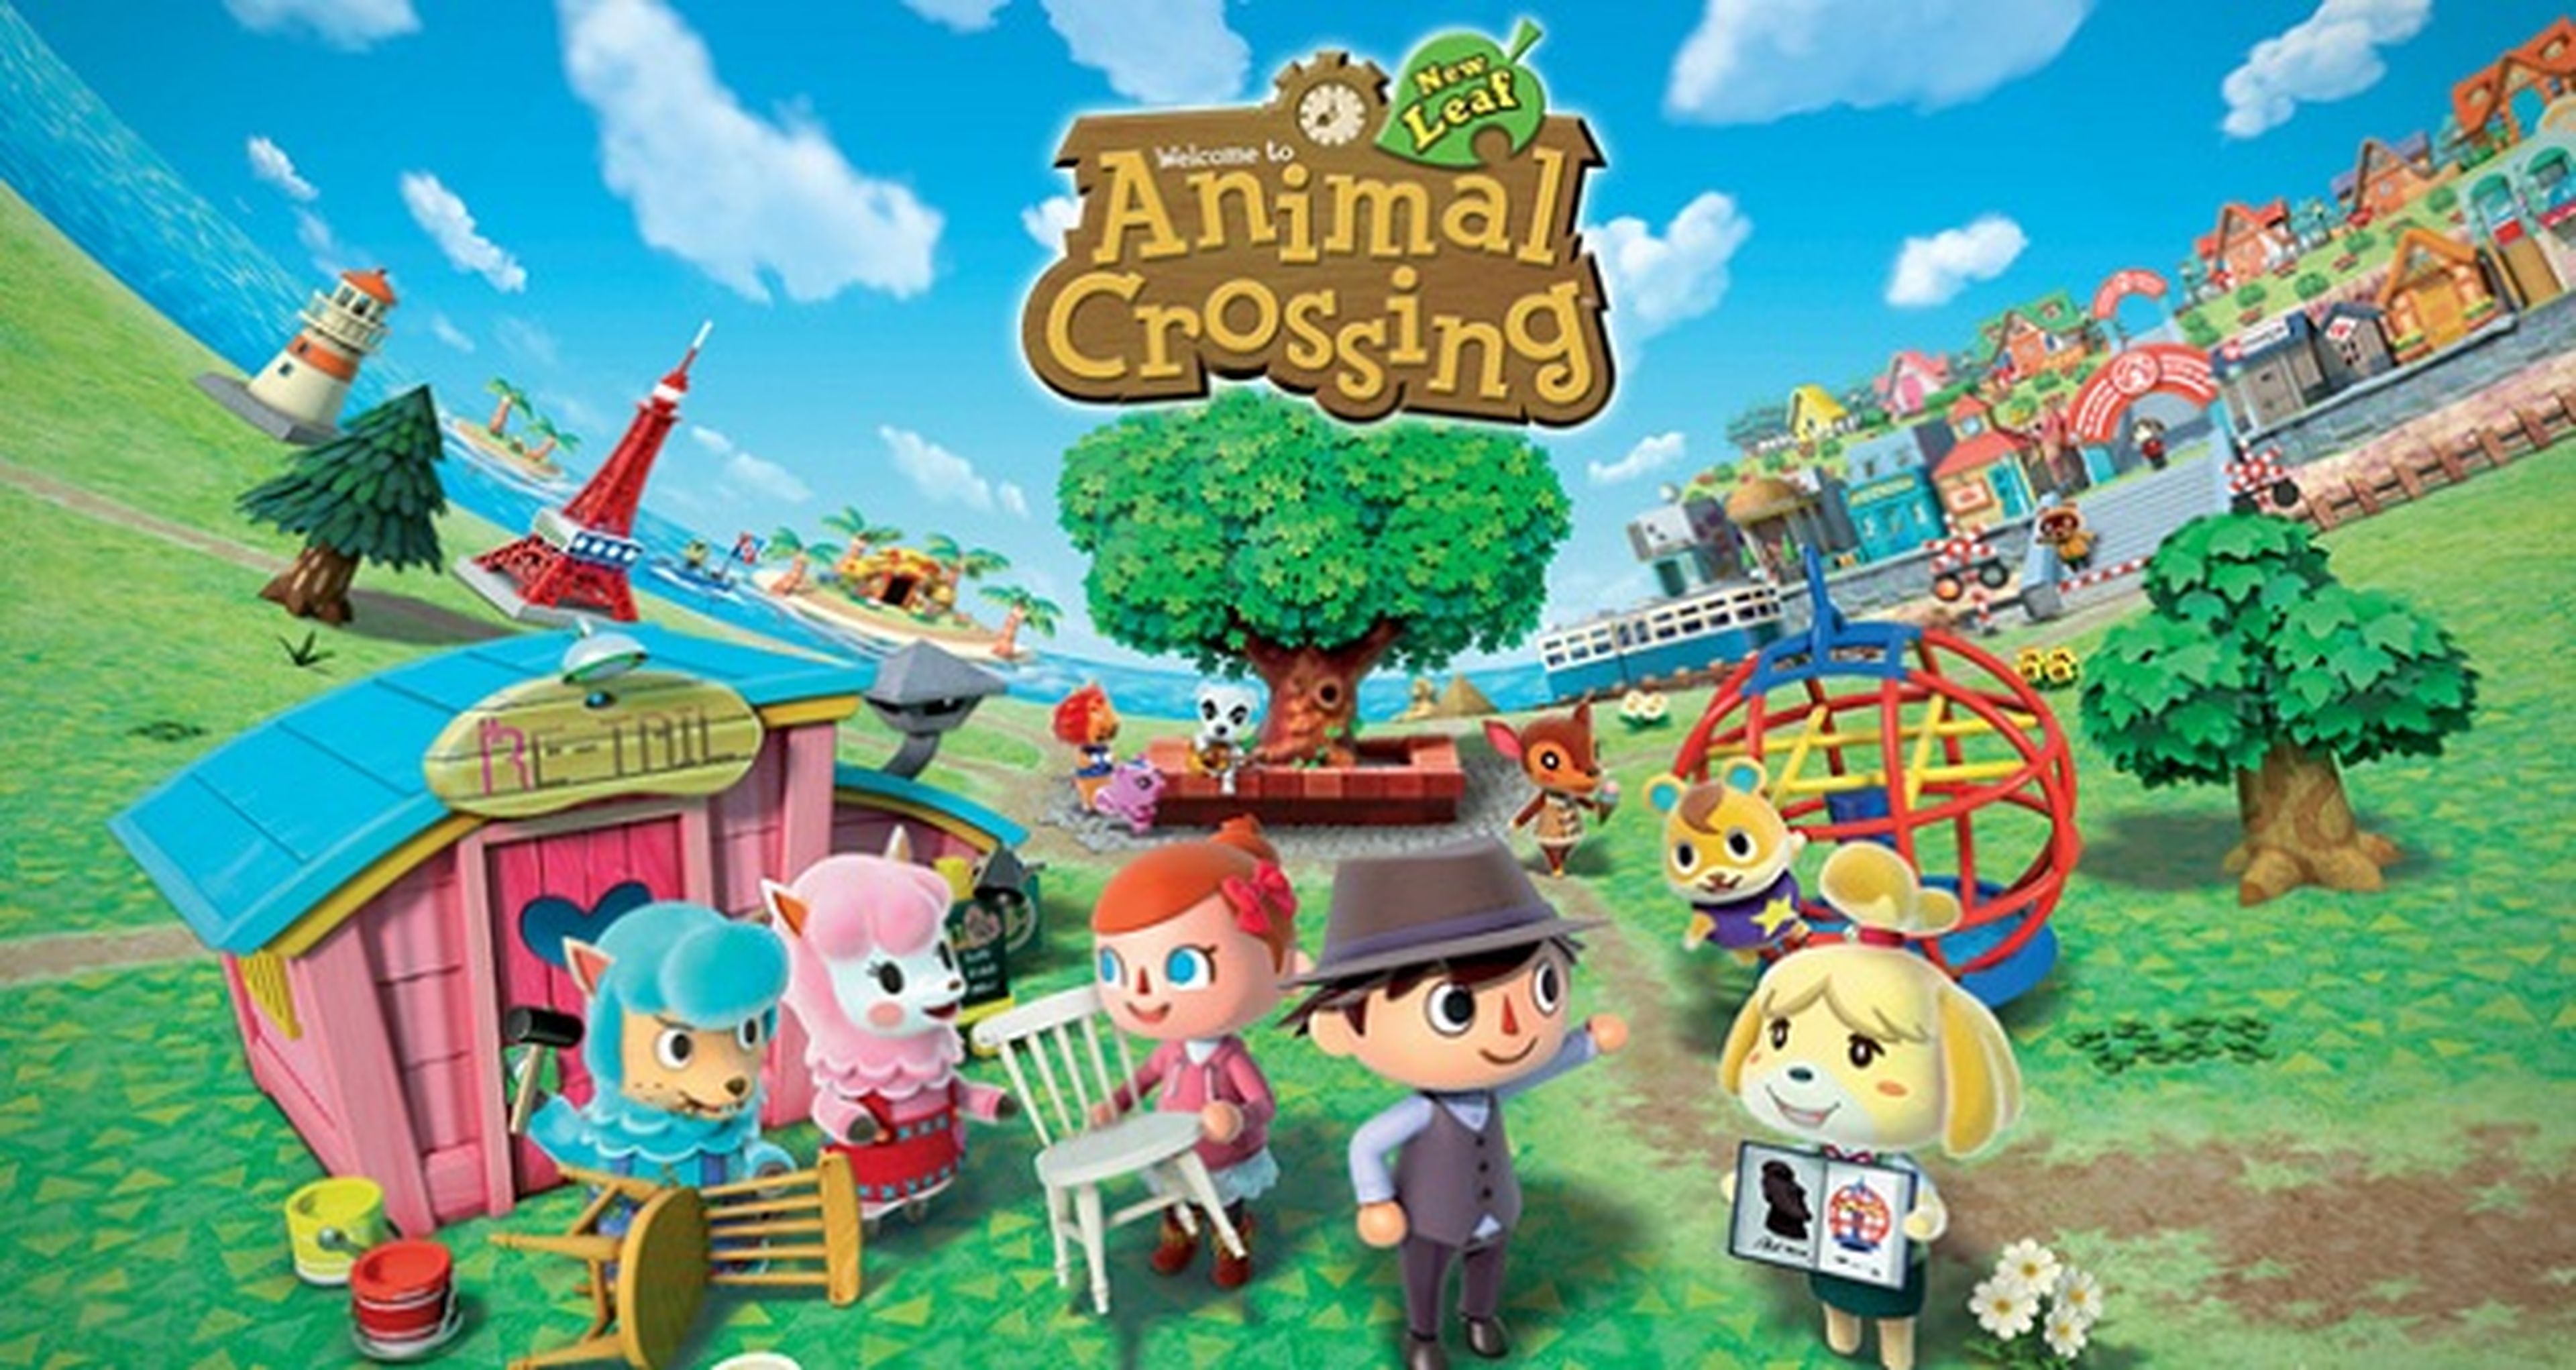 Animal Crossing New Leaf lider de ventas Nintendo